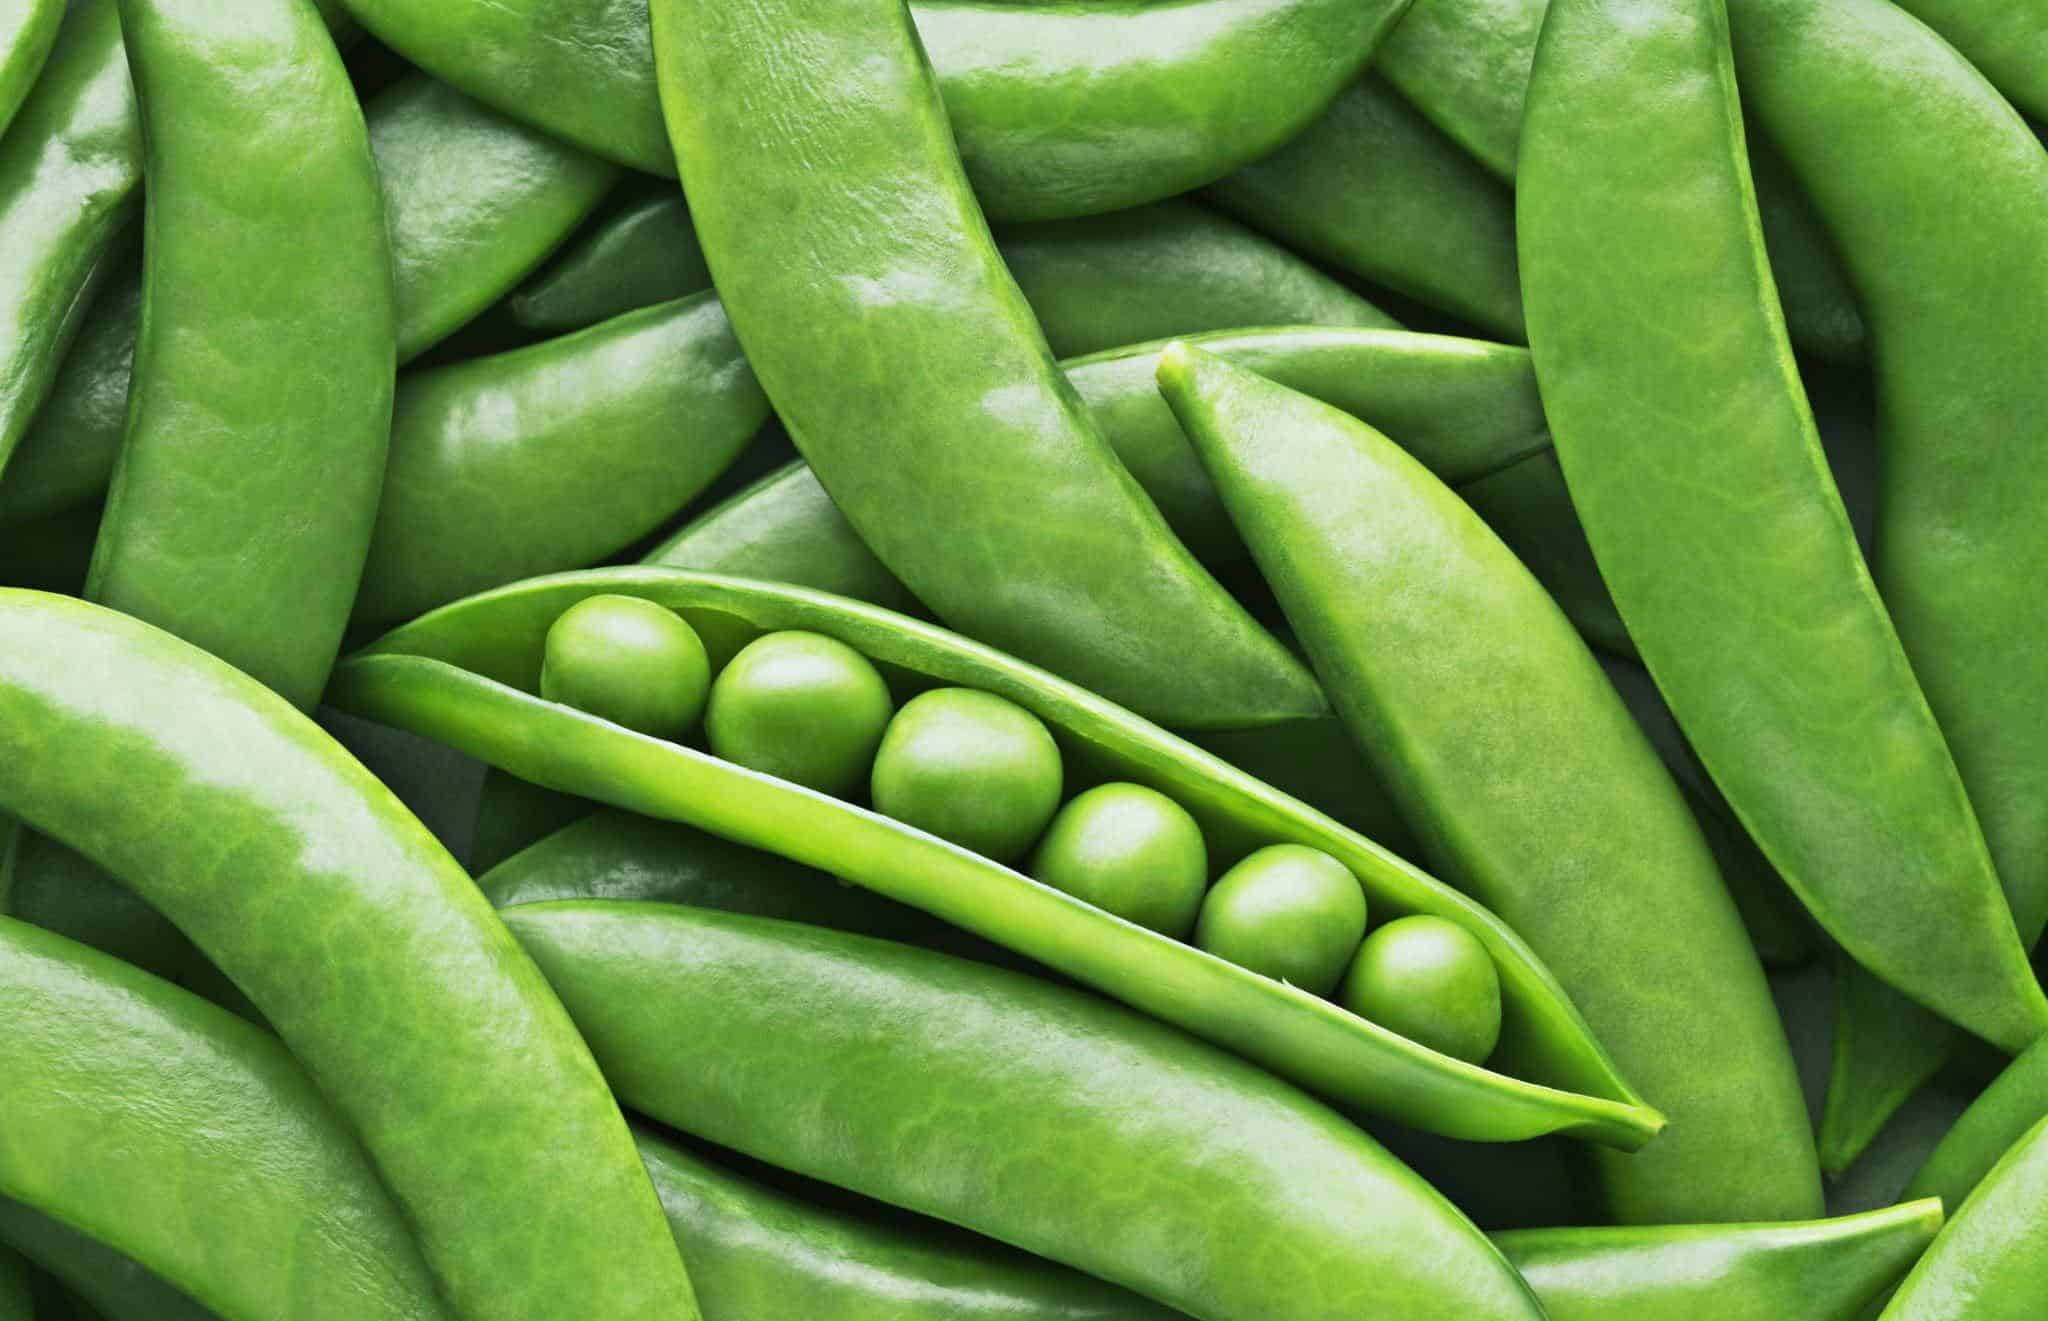 peas benefits